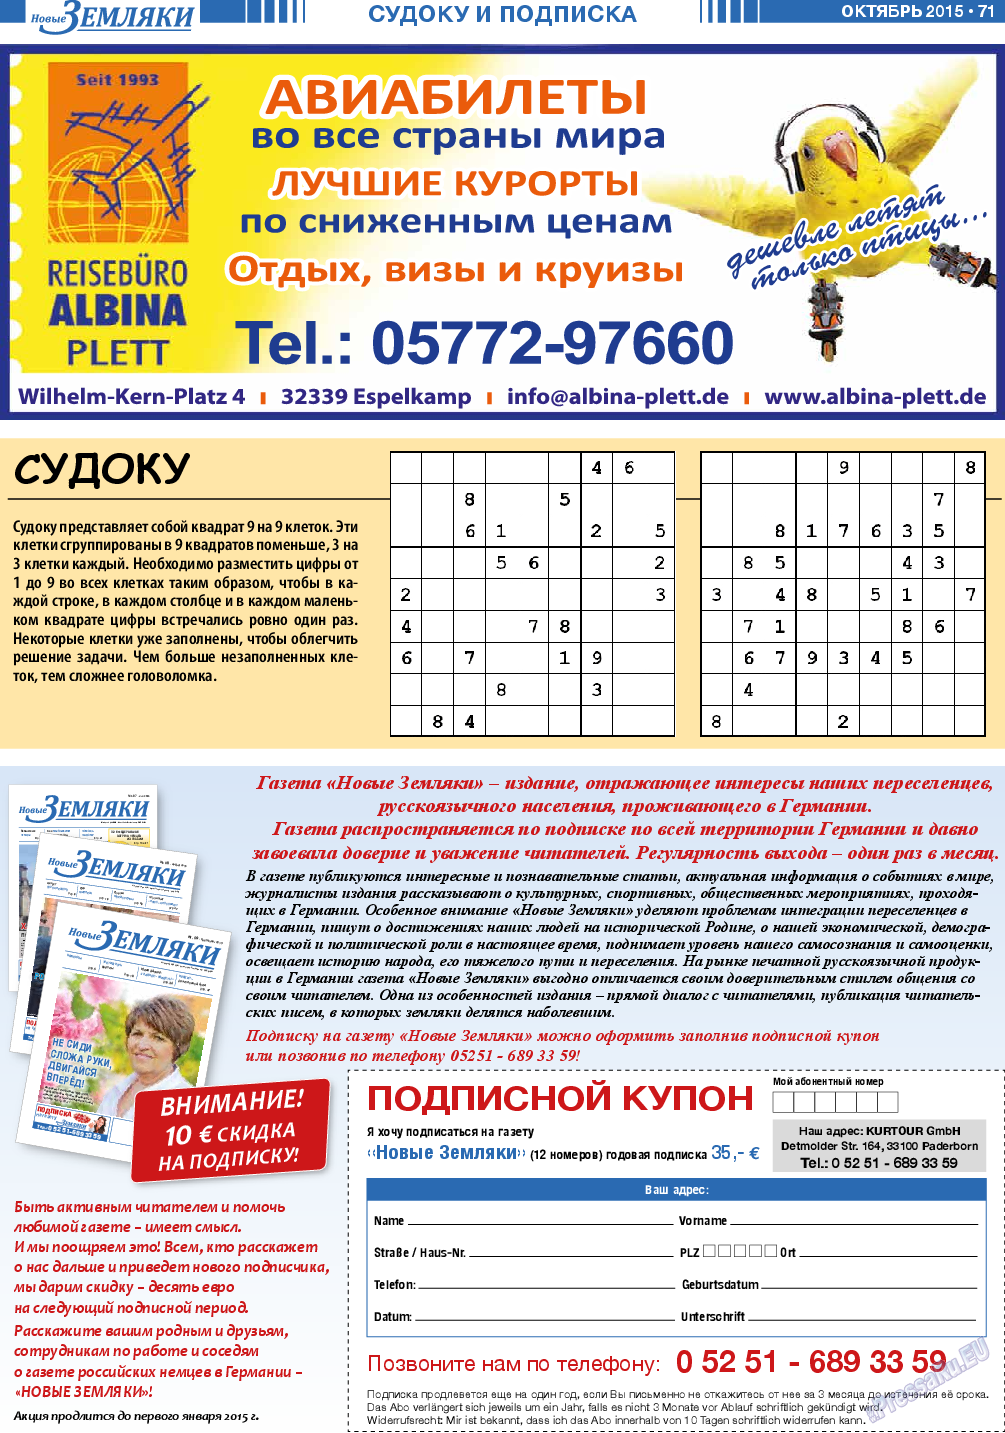 Новые Земляки, газета. 2015 №10 стр.71